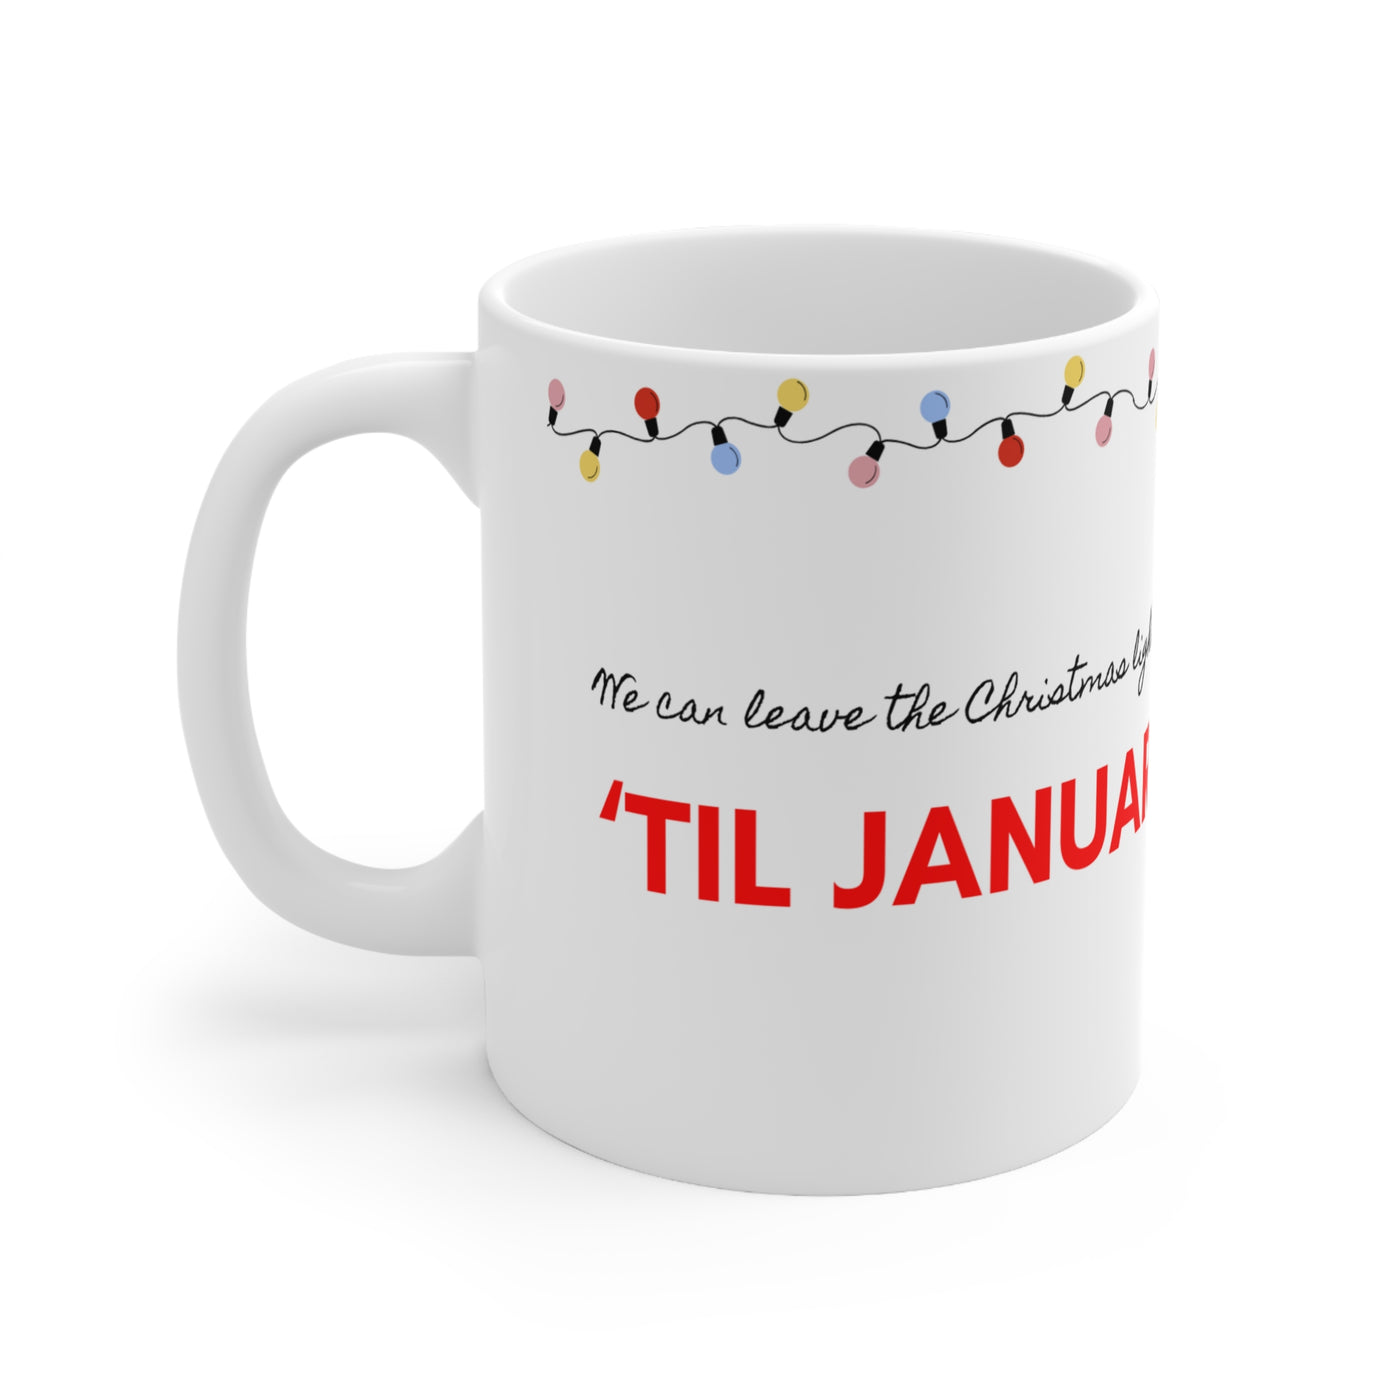 The Taylor - Christmas Lights Mug